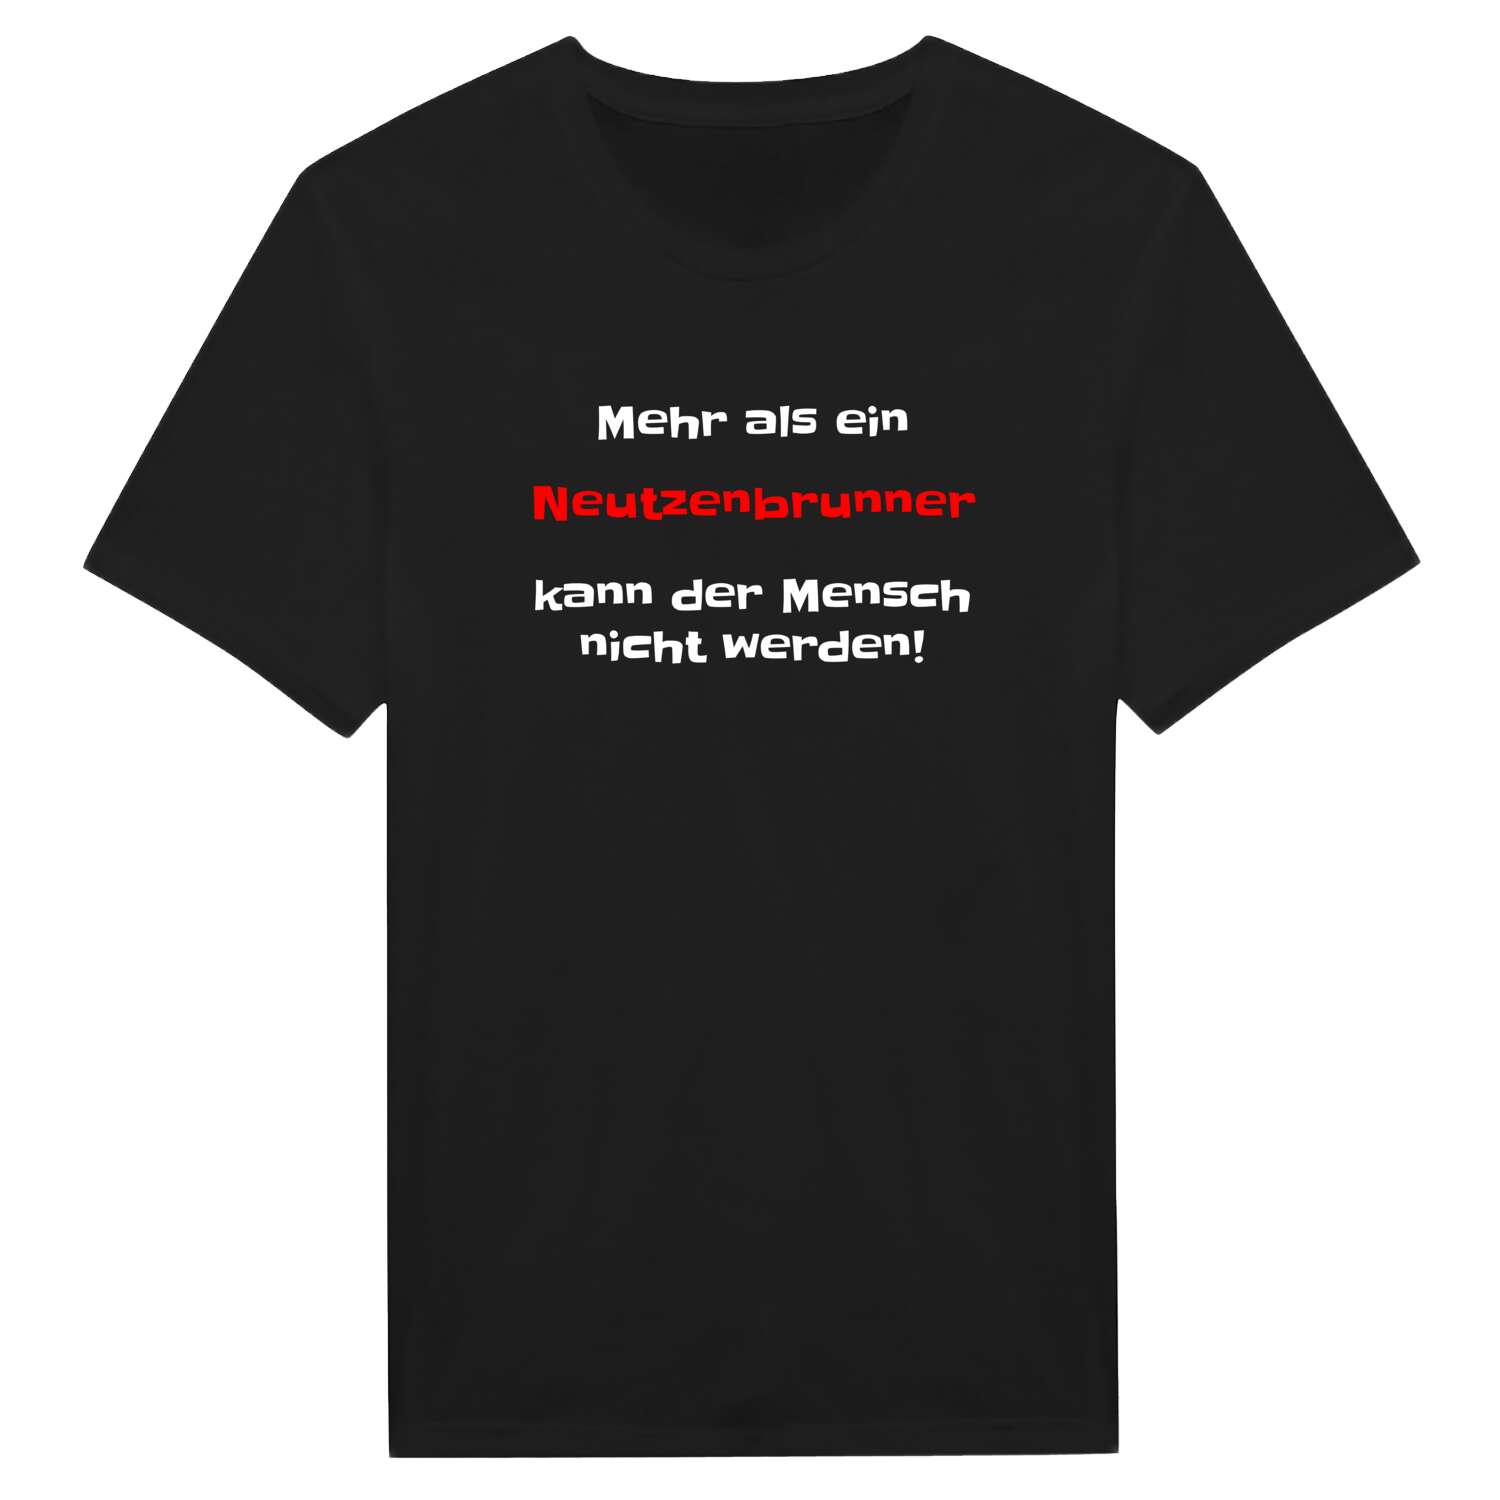 Neutzenbrunn T-Shirt »Mehr als ein«